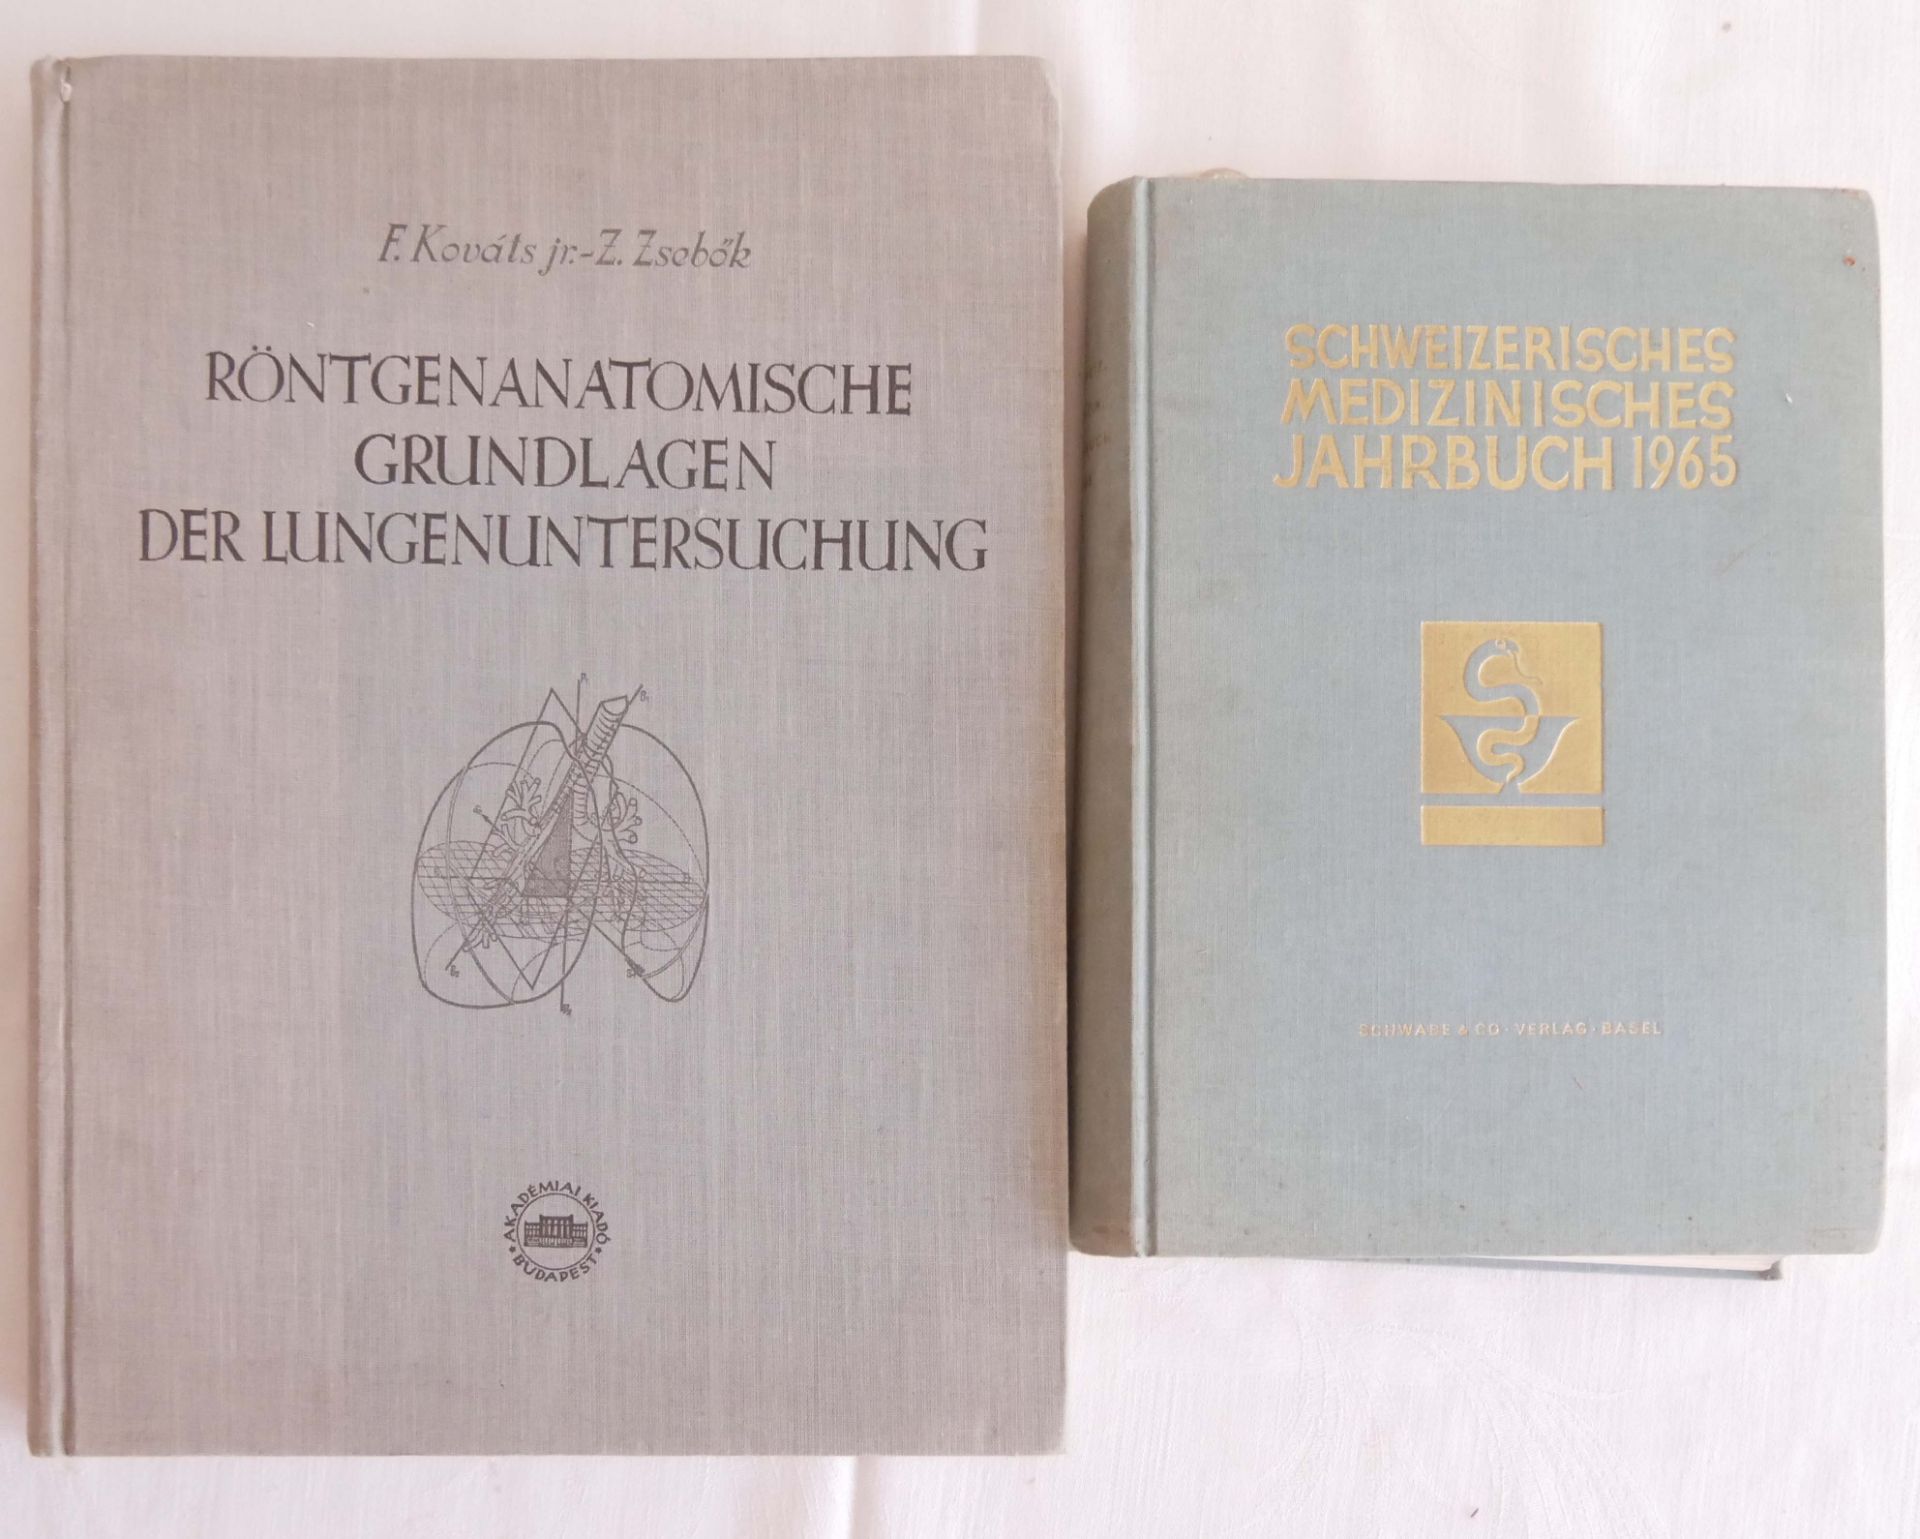 "Schweizerisches medizinisches Jahrbuch 1965" und "Röntgenanatomische Grundlagen der